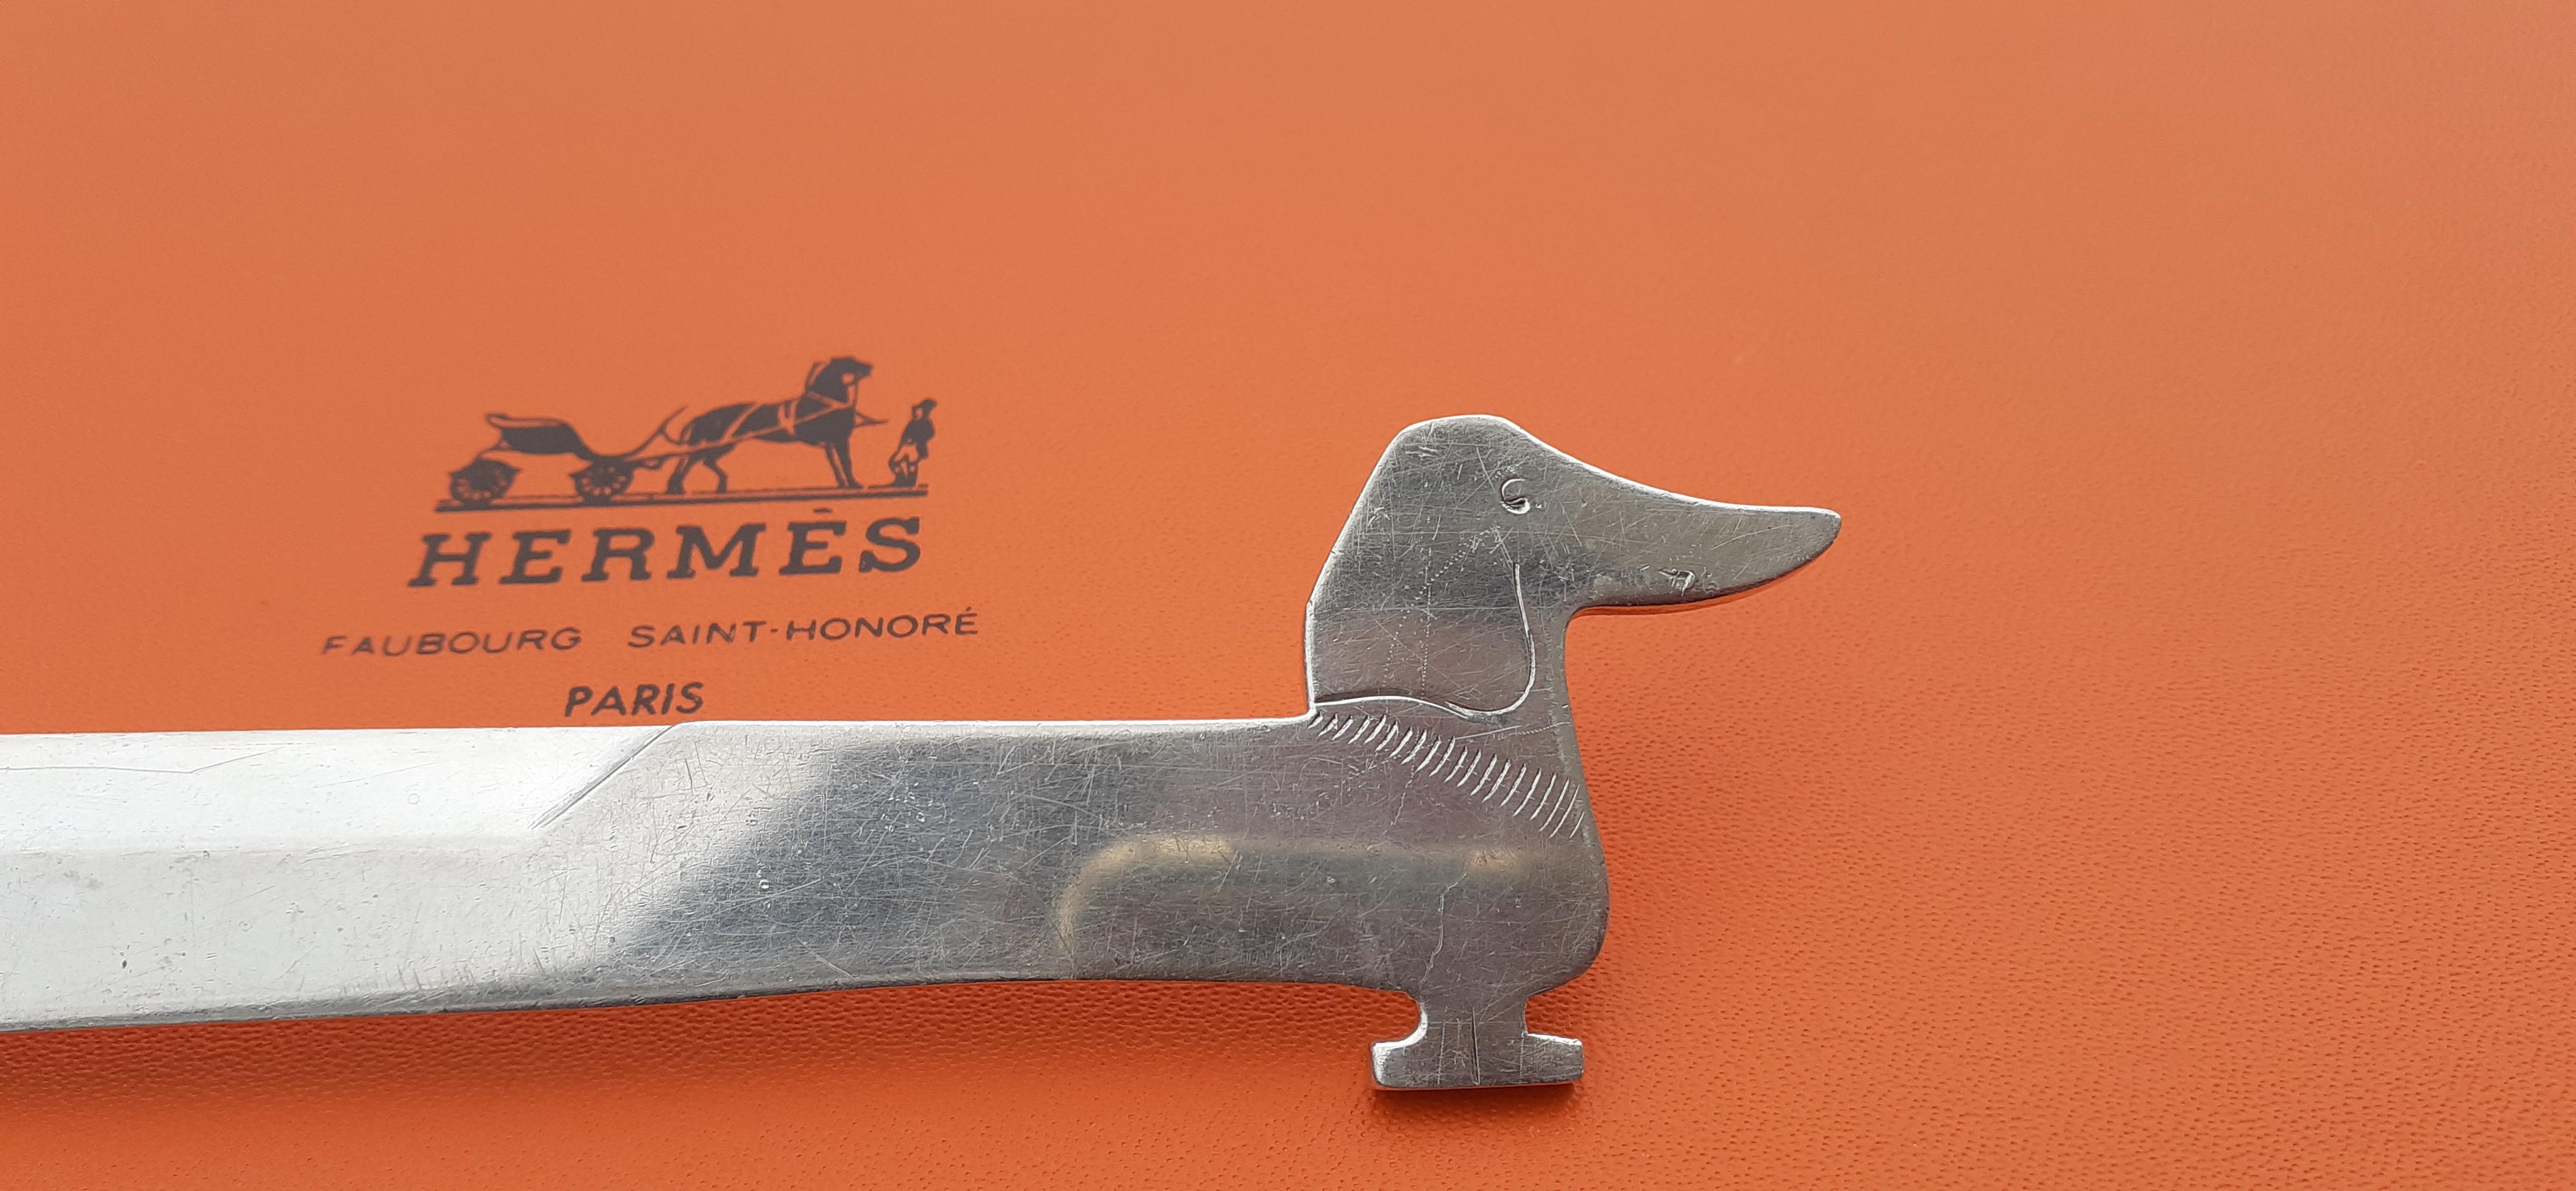 Hermès Vintage Teckel Dachshund Dog Shaped Letter Opener by Ravinet d'Enfert  For Sale 2